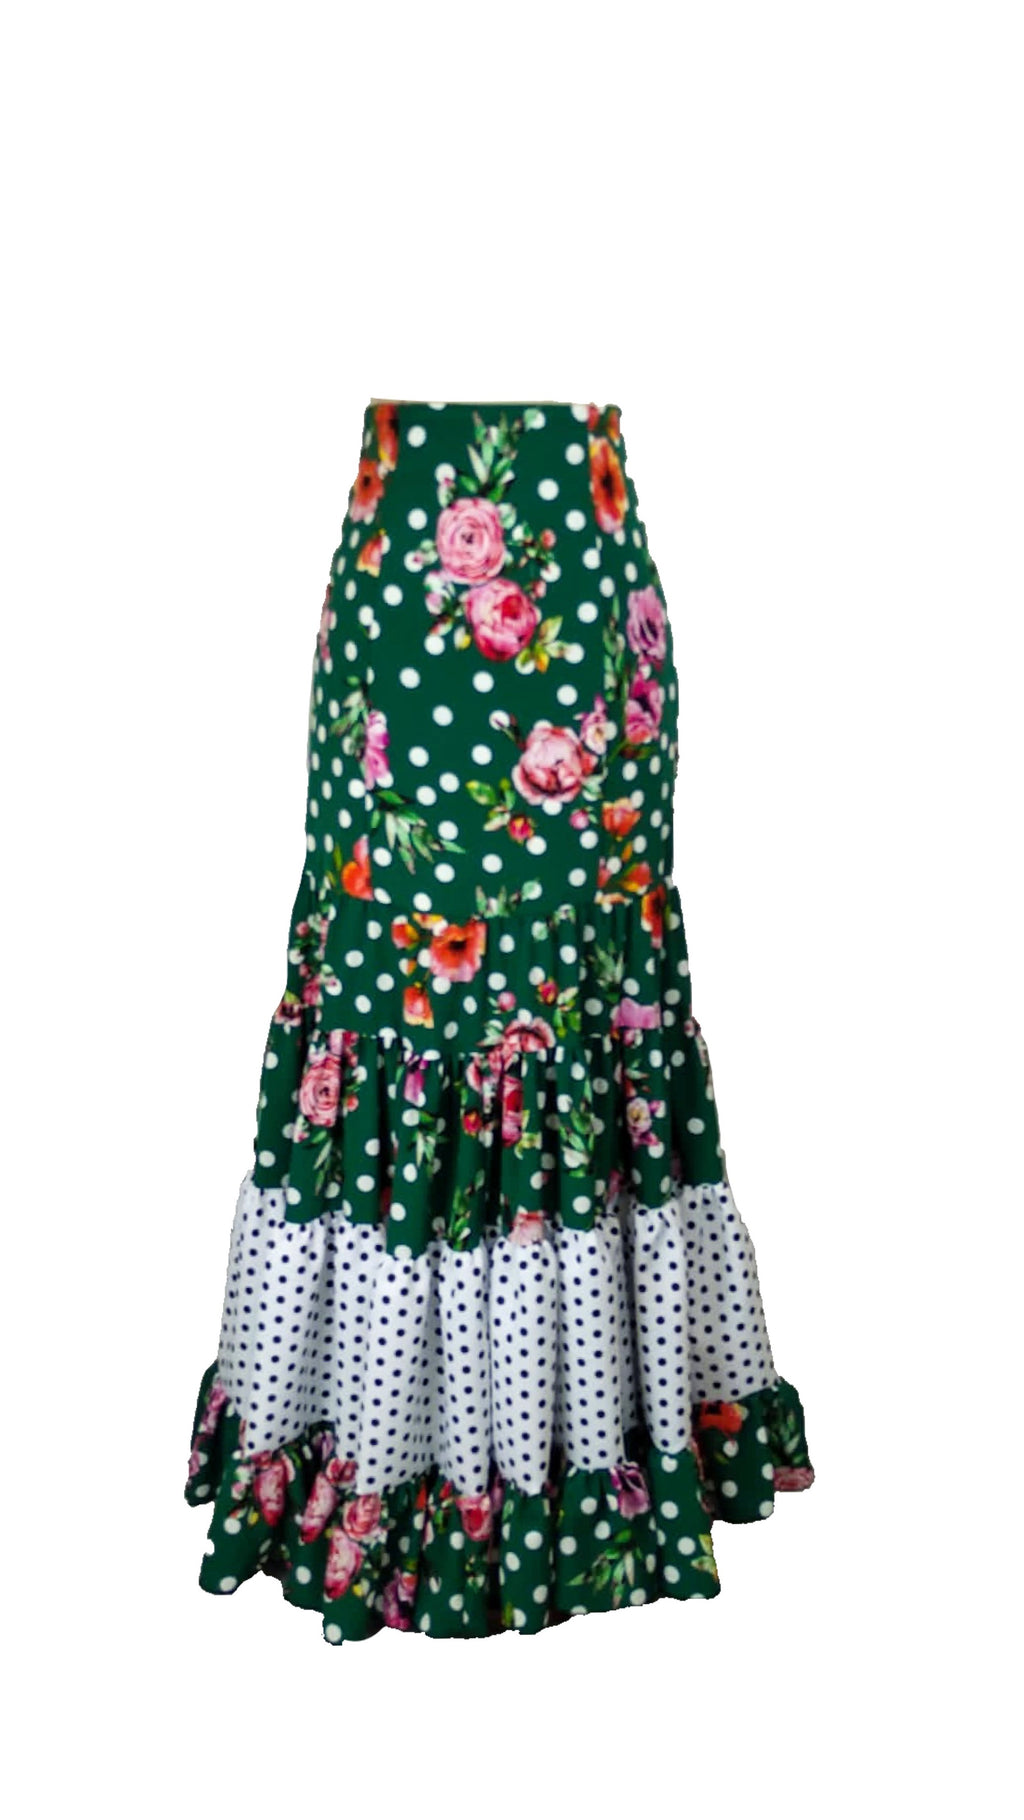 Faldas flamencas y pantalón – Etiquetado Crespón – FlamencoPasión